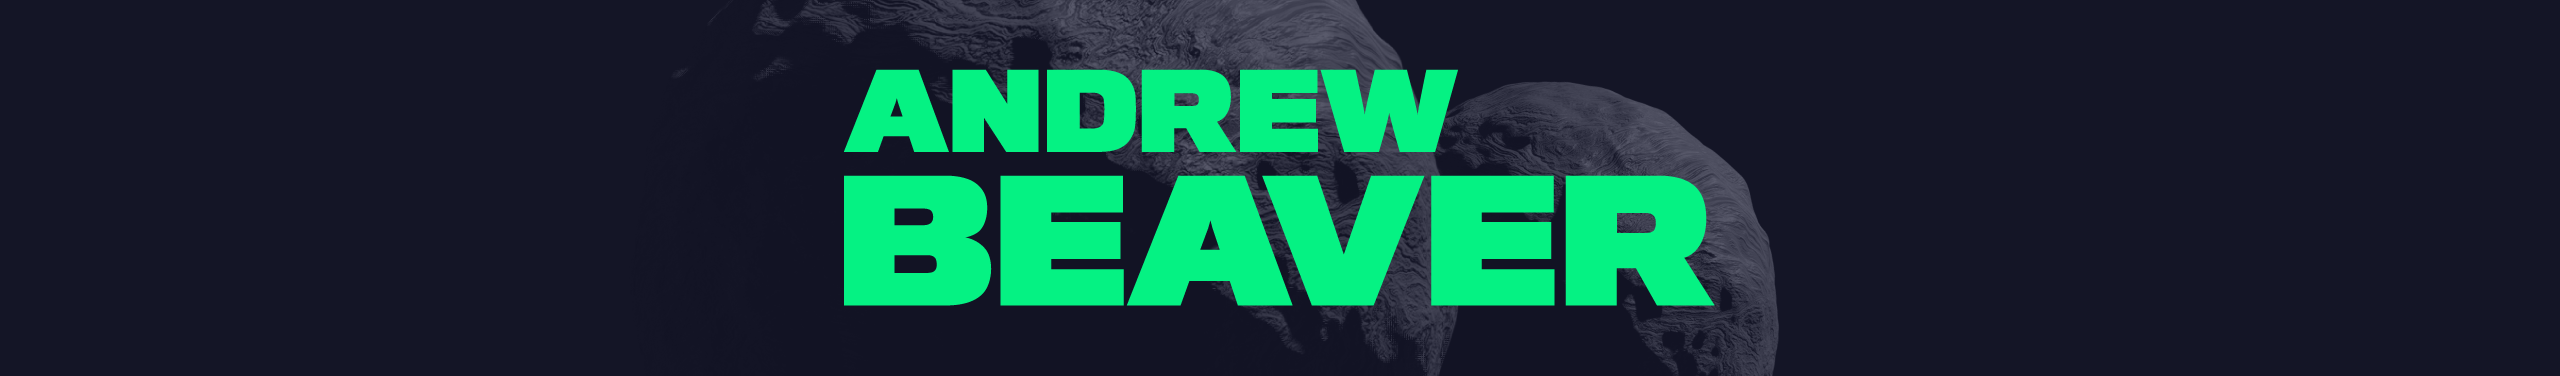 Andrew Beaver's profile banner